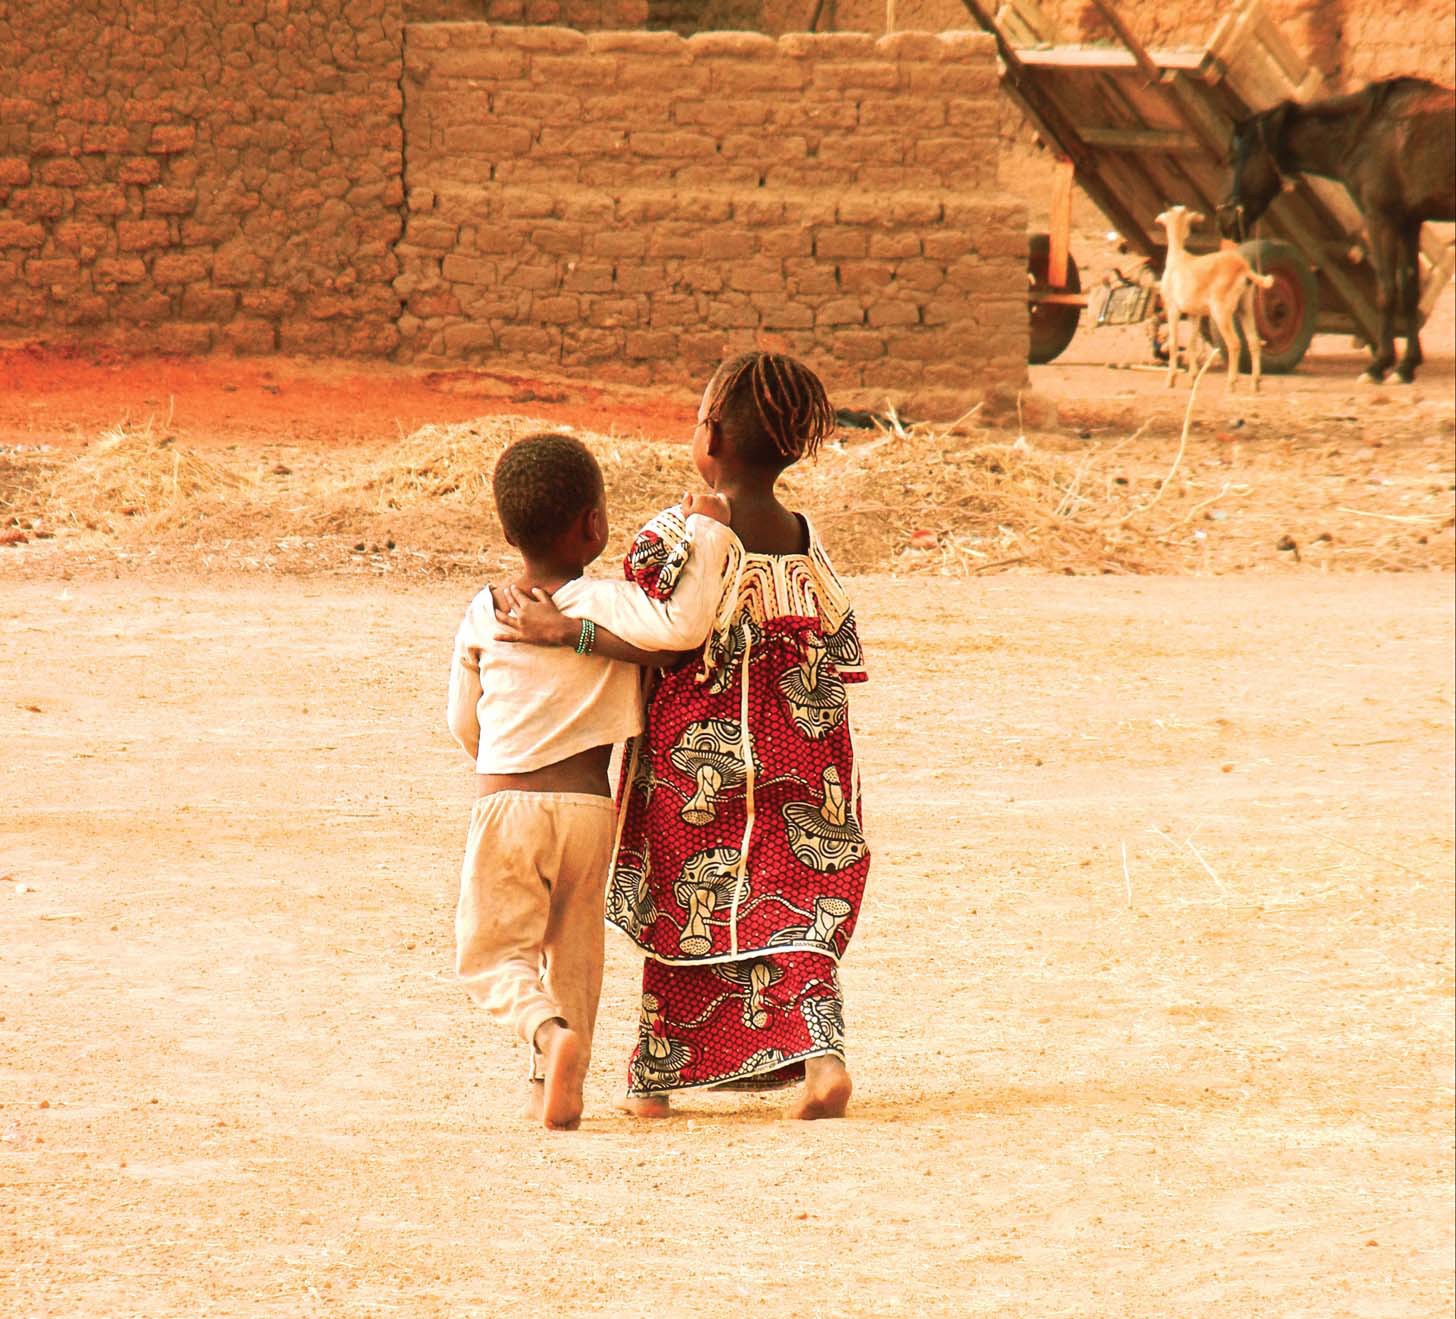 Two Malian children walking on dirt road